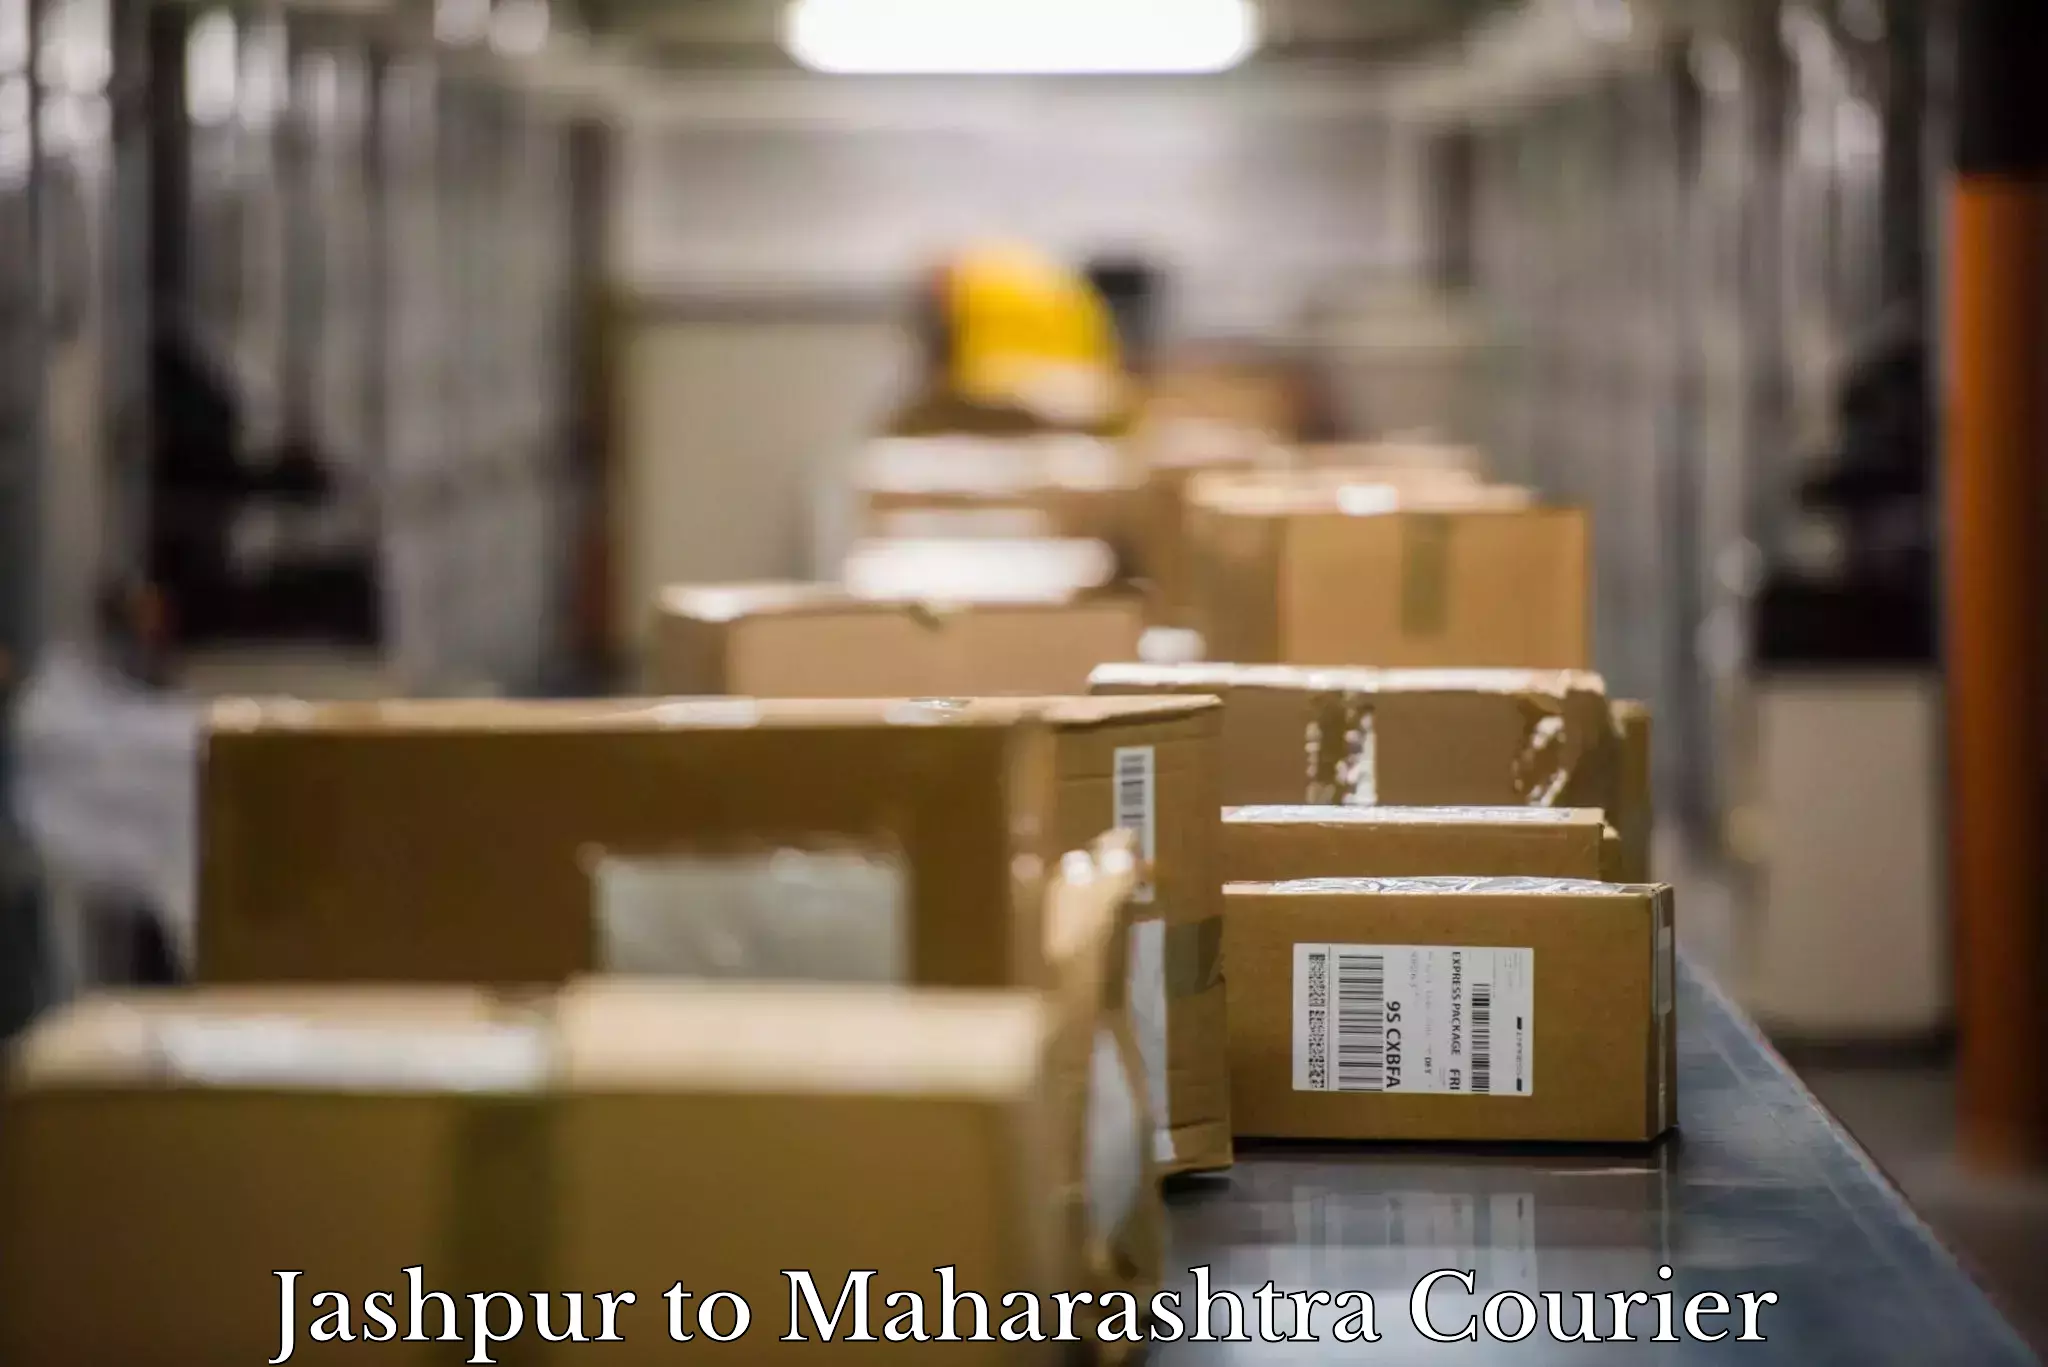 Furniture delivery service Jashpur to Saoner